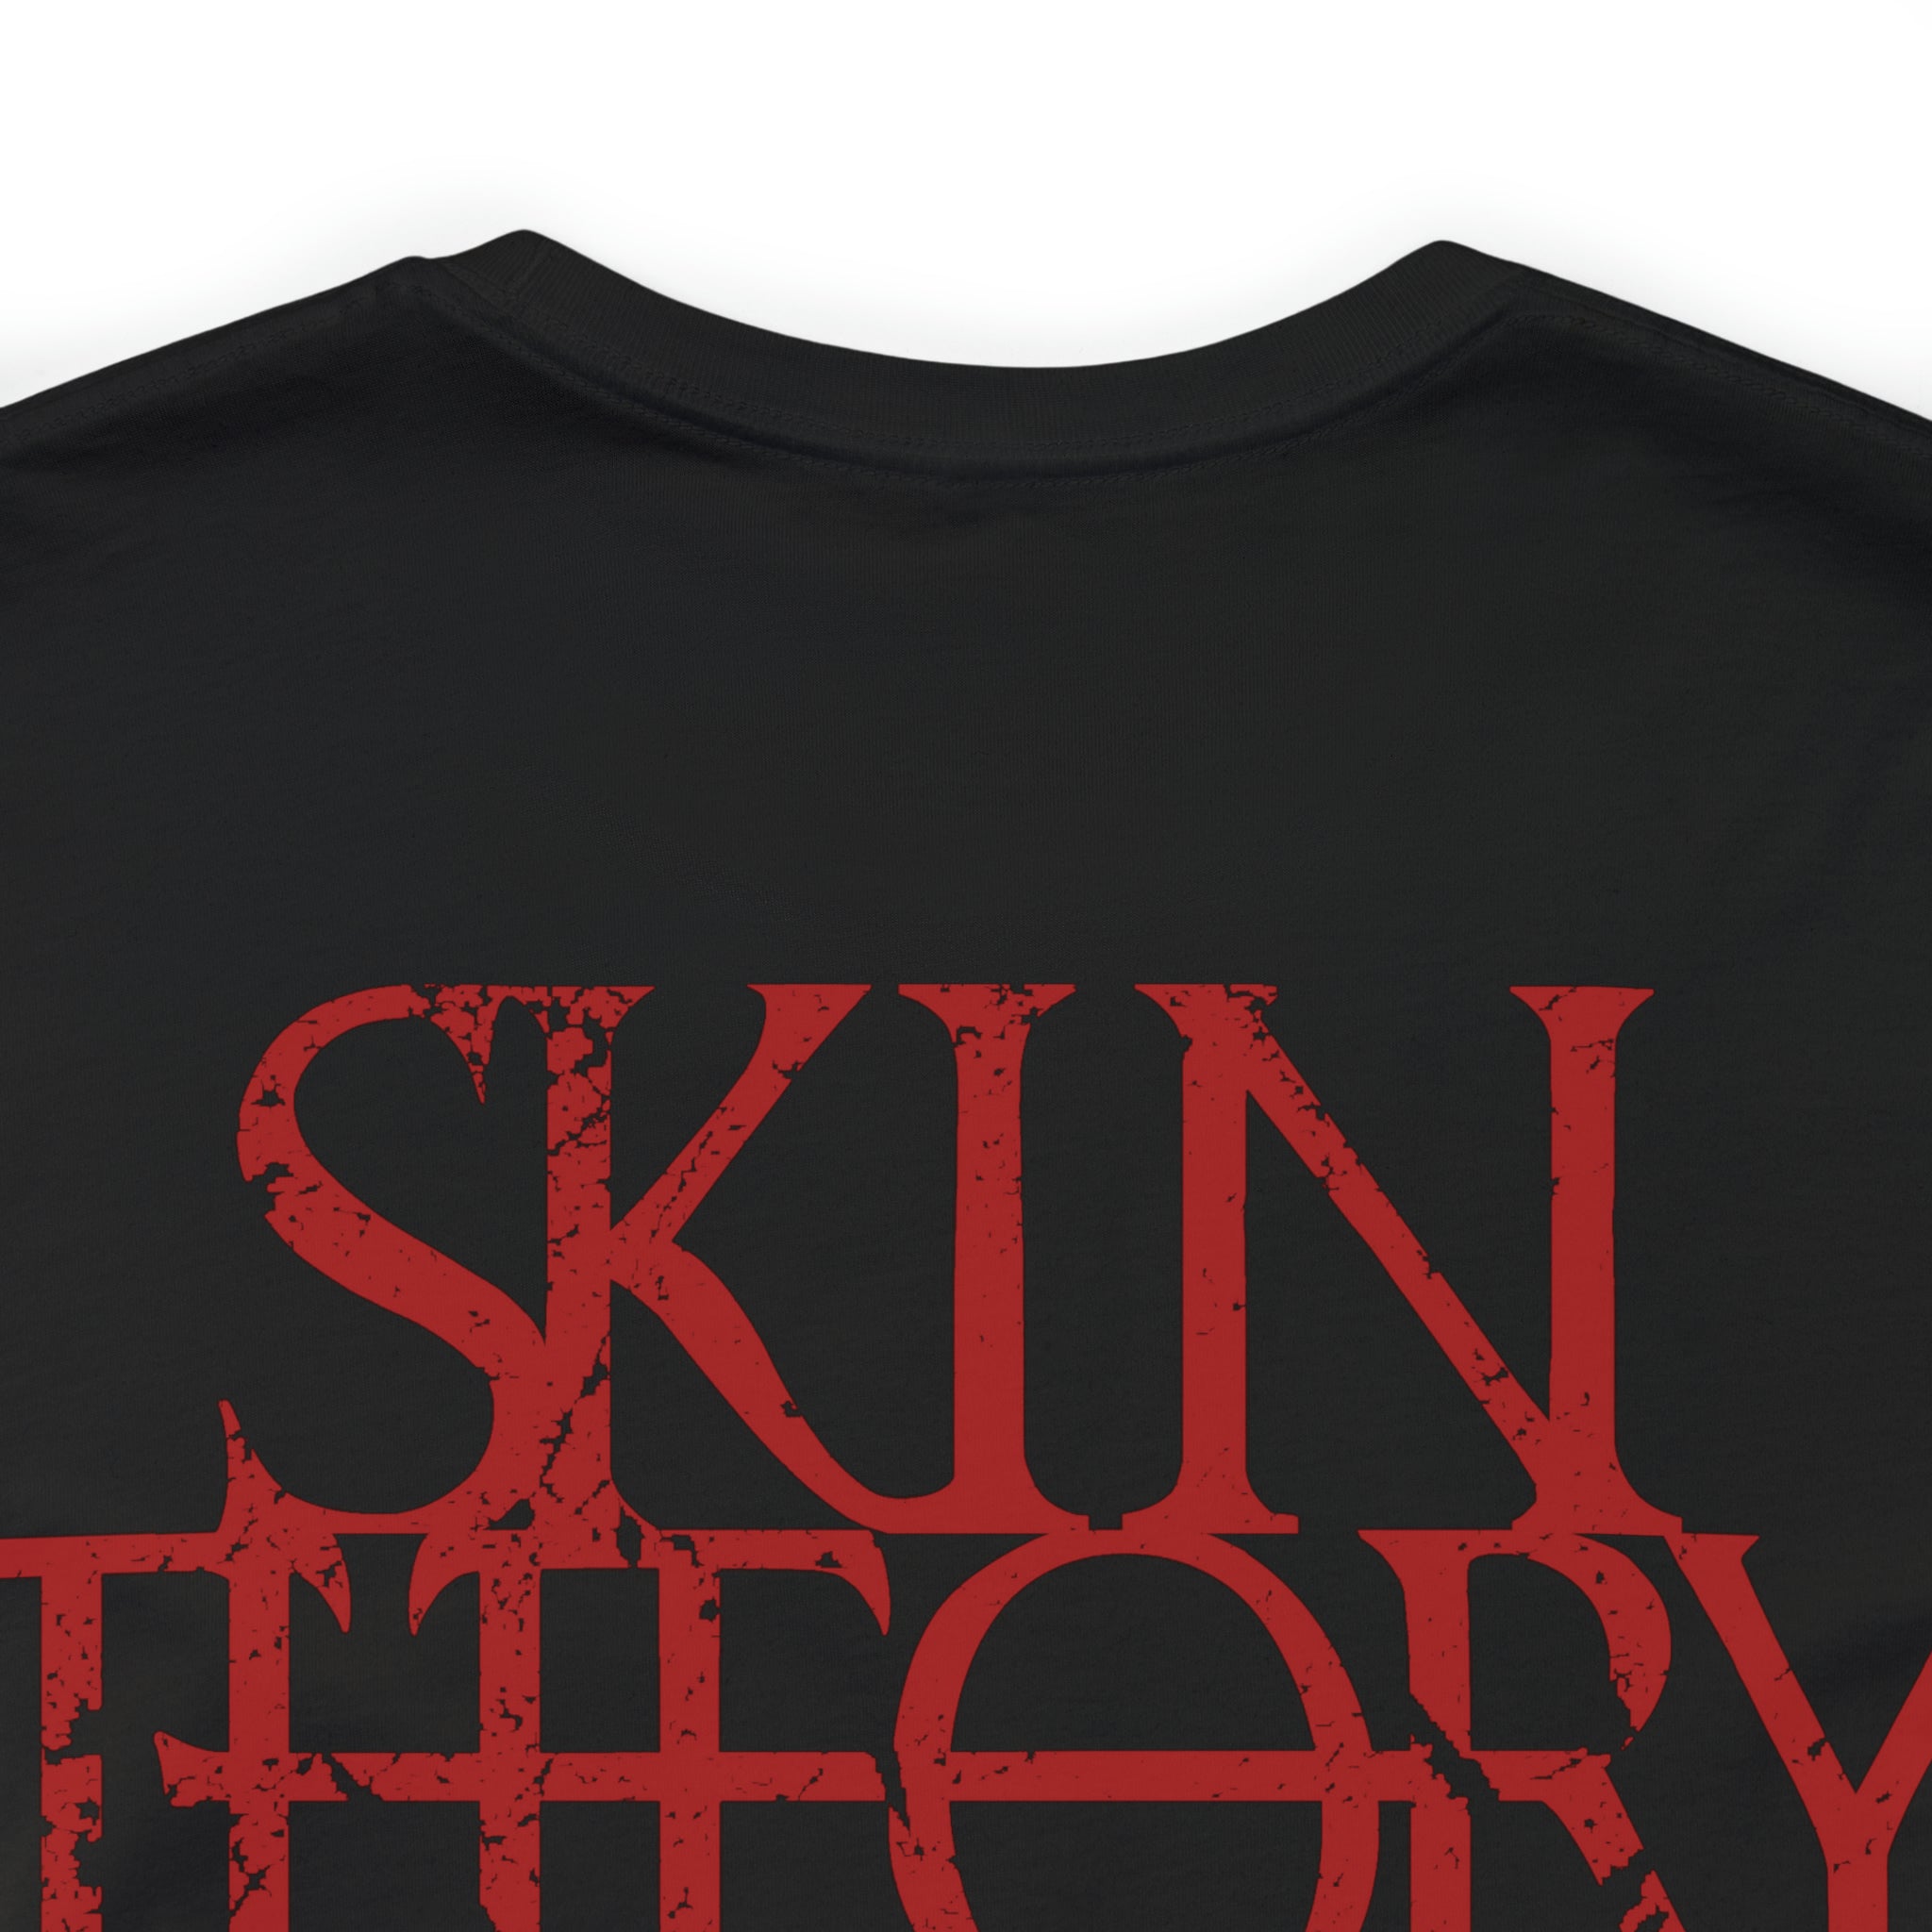 SkinTheory Quote Unisex Jersey Short Sleeve Tee - V2